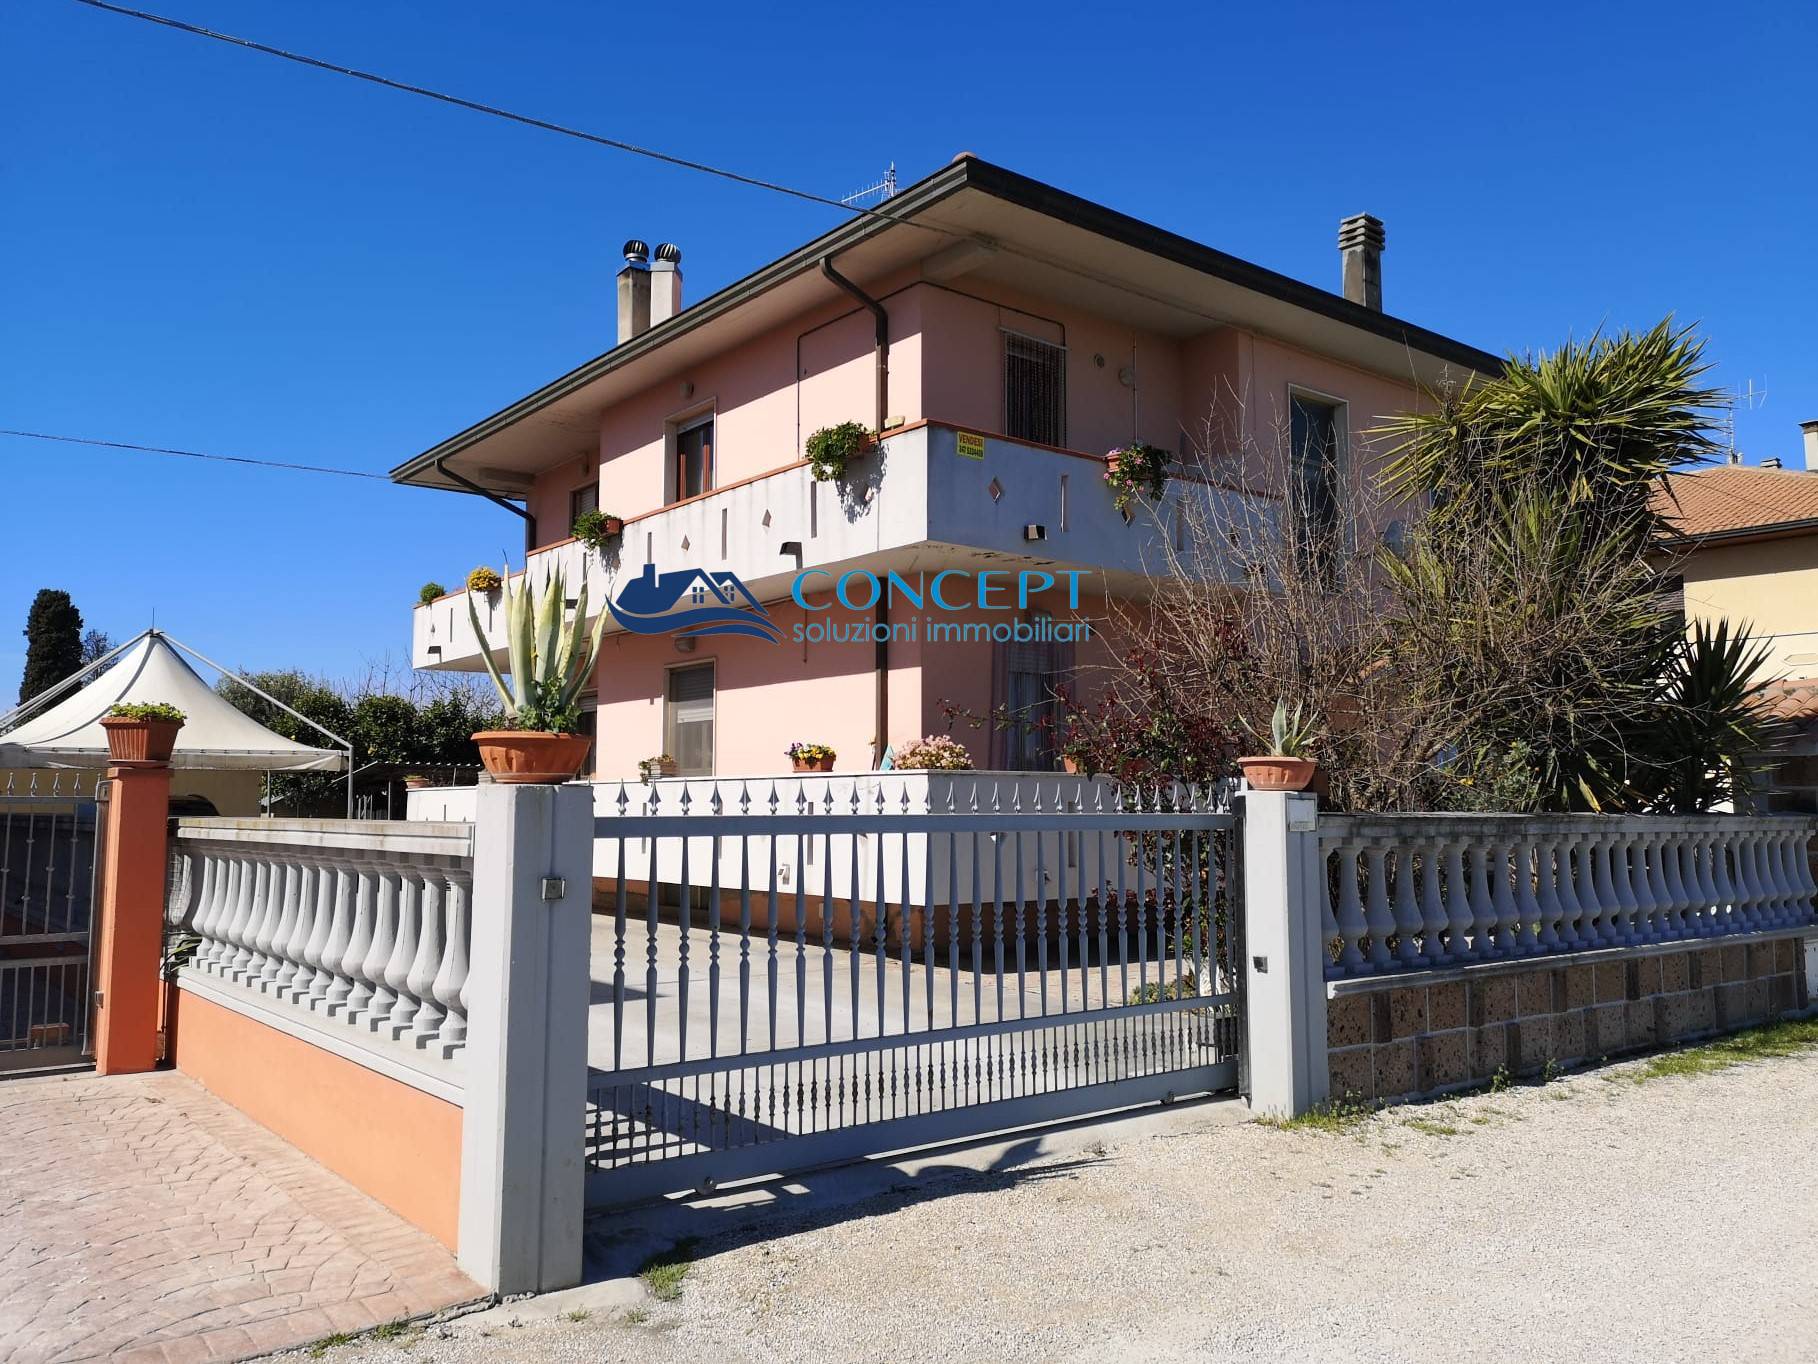 Appartamento in vendita a Roseto degli Abruzzi, 4 locali, zona Località: ColognaPaese, prezzo € 150.000 | PortaleAgenzieImmobiliari.it